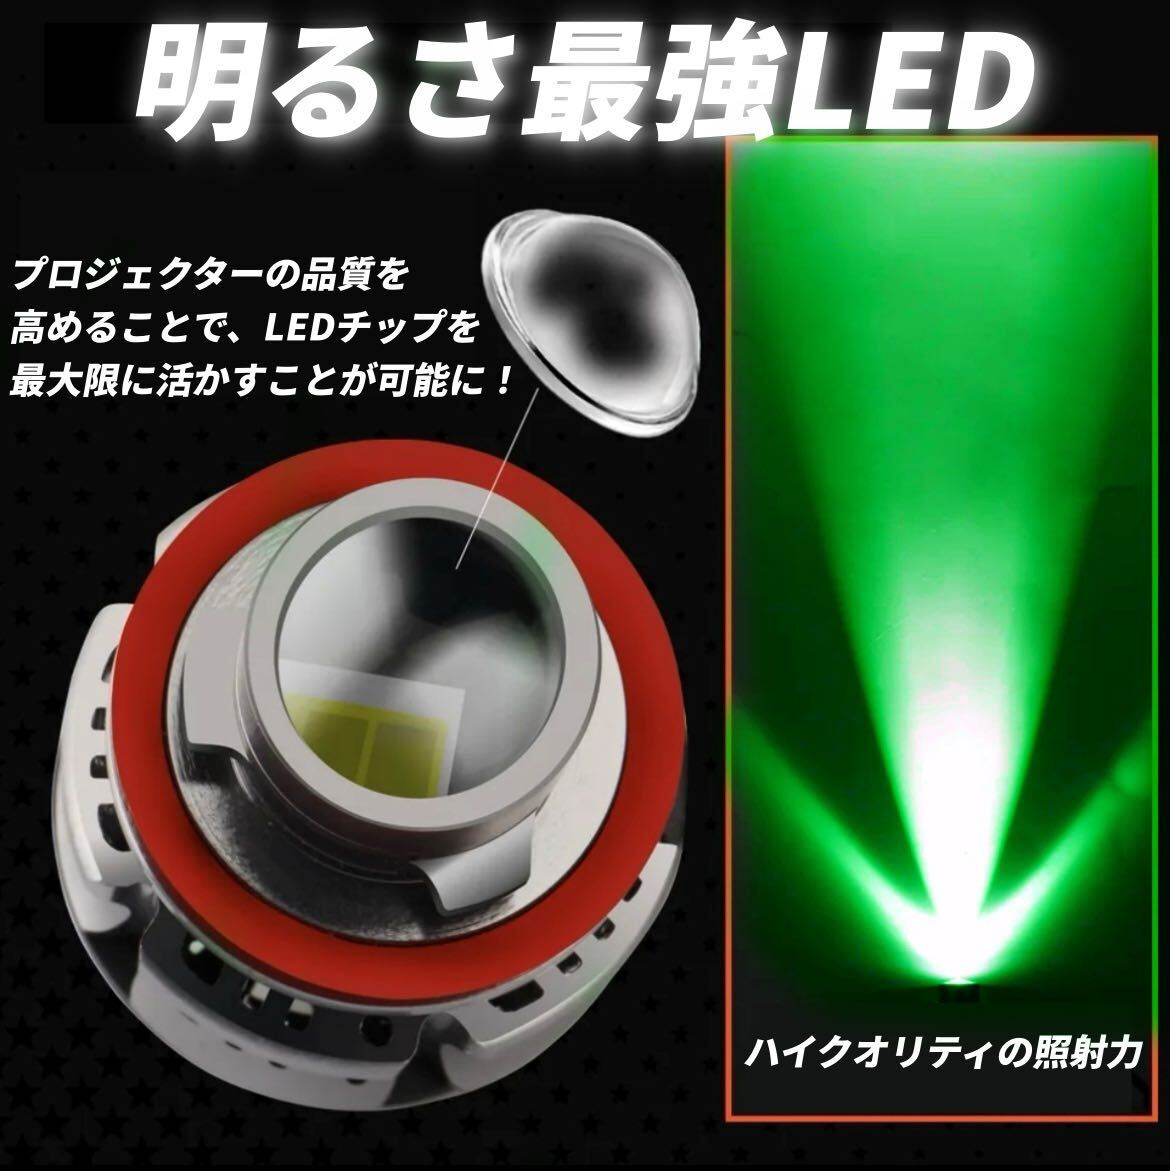 [. свет LED] Laser beam люминесценция LED противотуманая фара зеленый H8/H11/H16 Alphard Vellfire Prius 